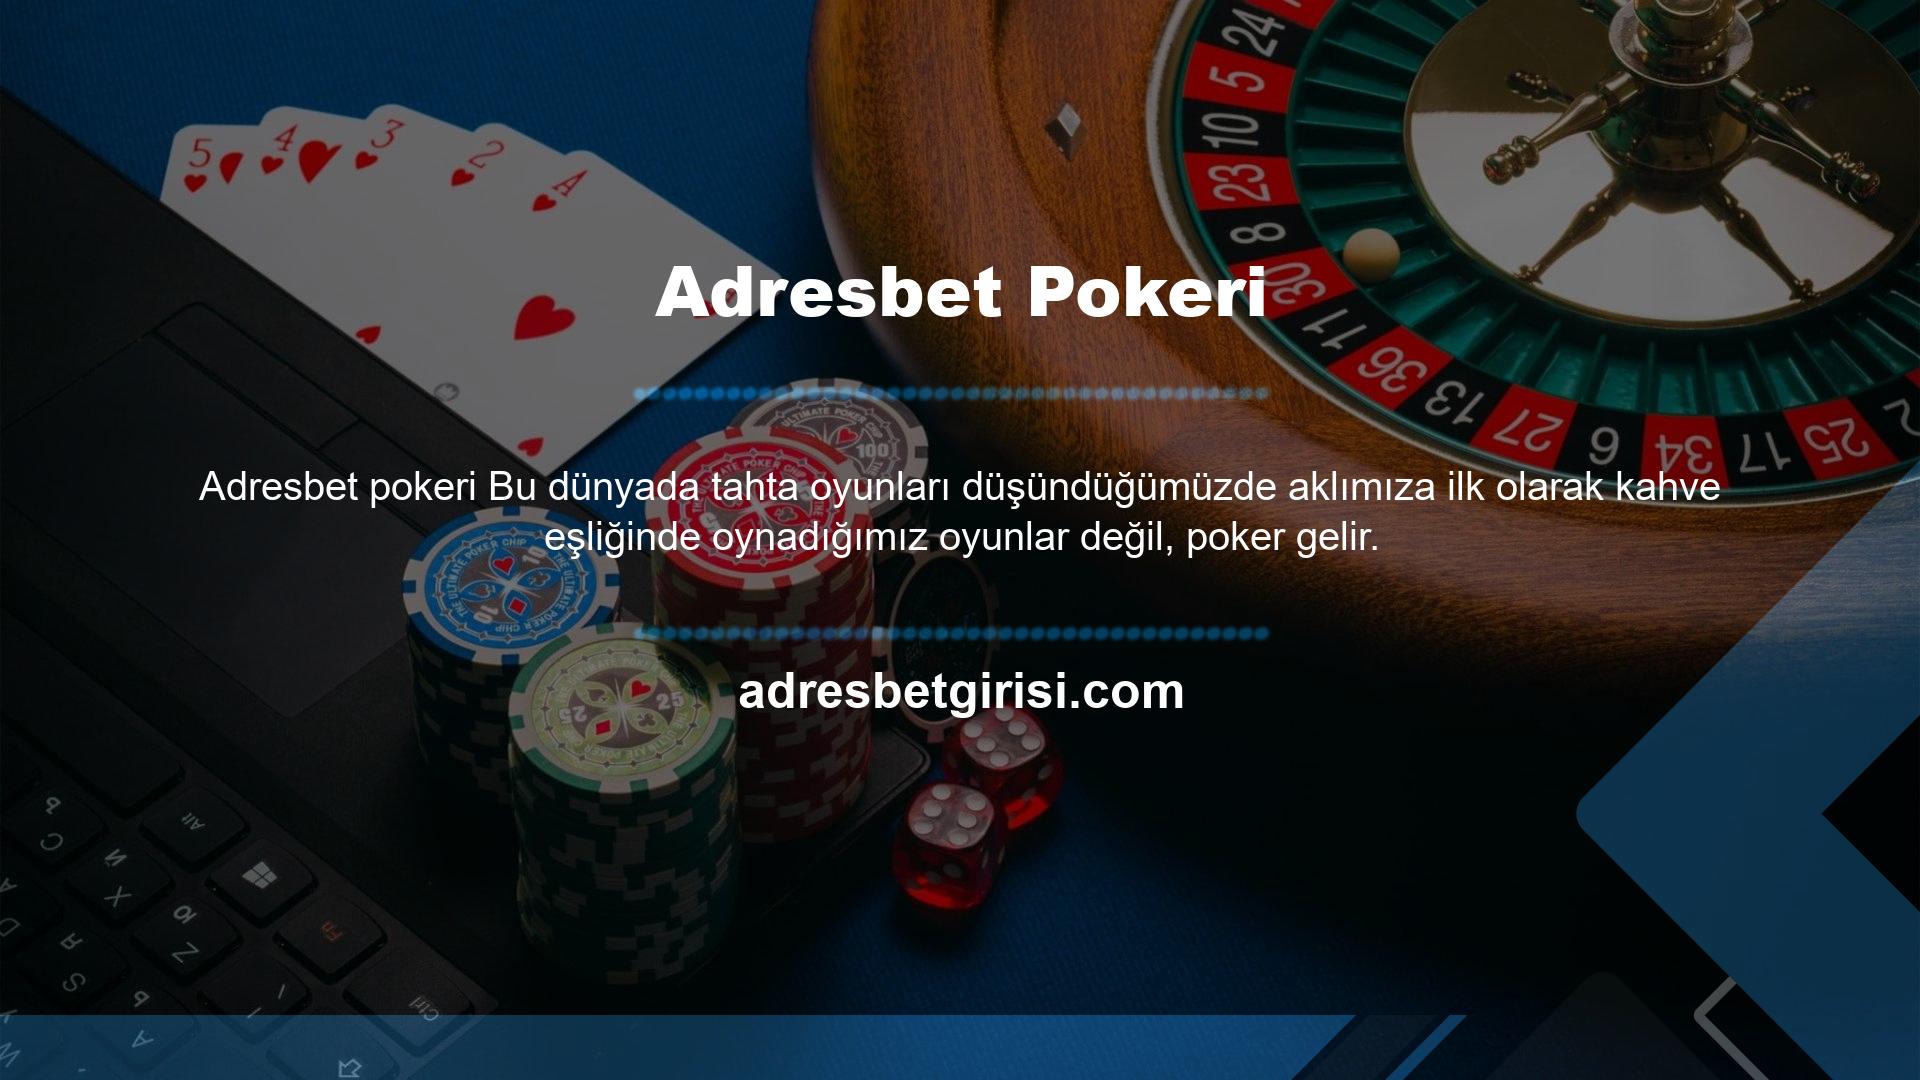 Poker söz konusu olduğunda, Adresbet çok iyi bir zemin oluşturmuştur